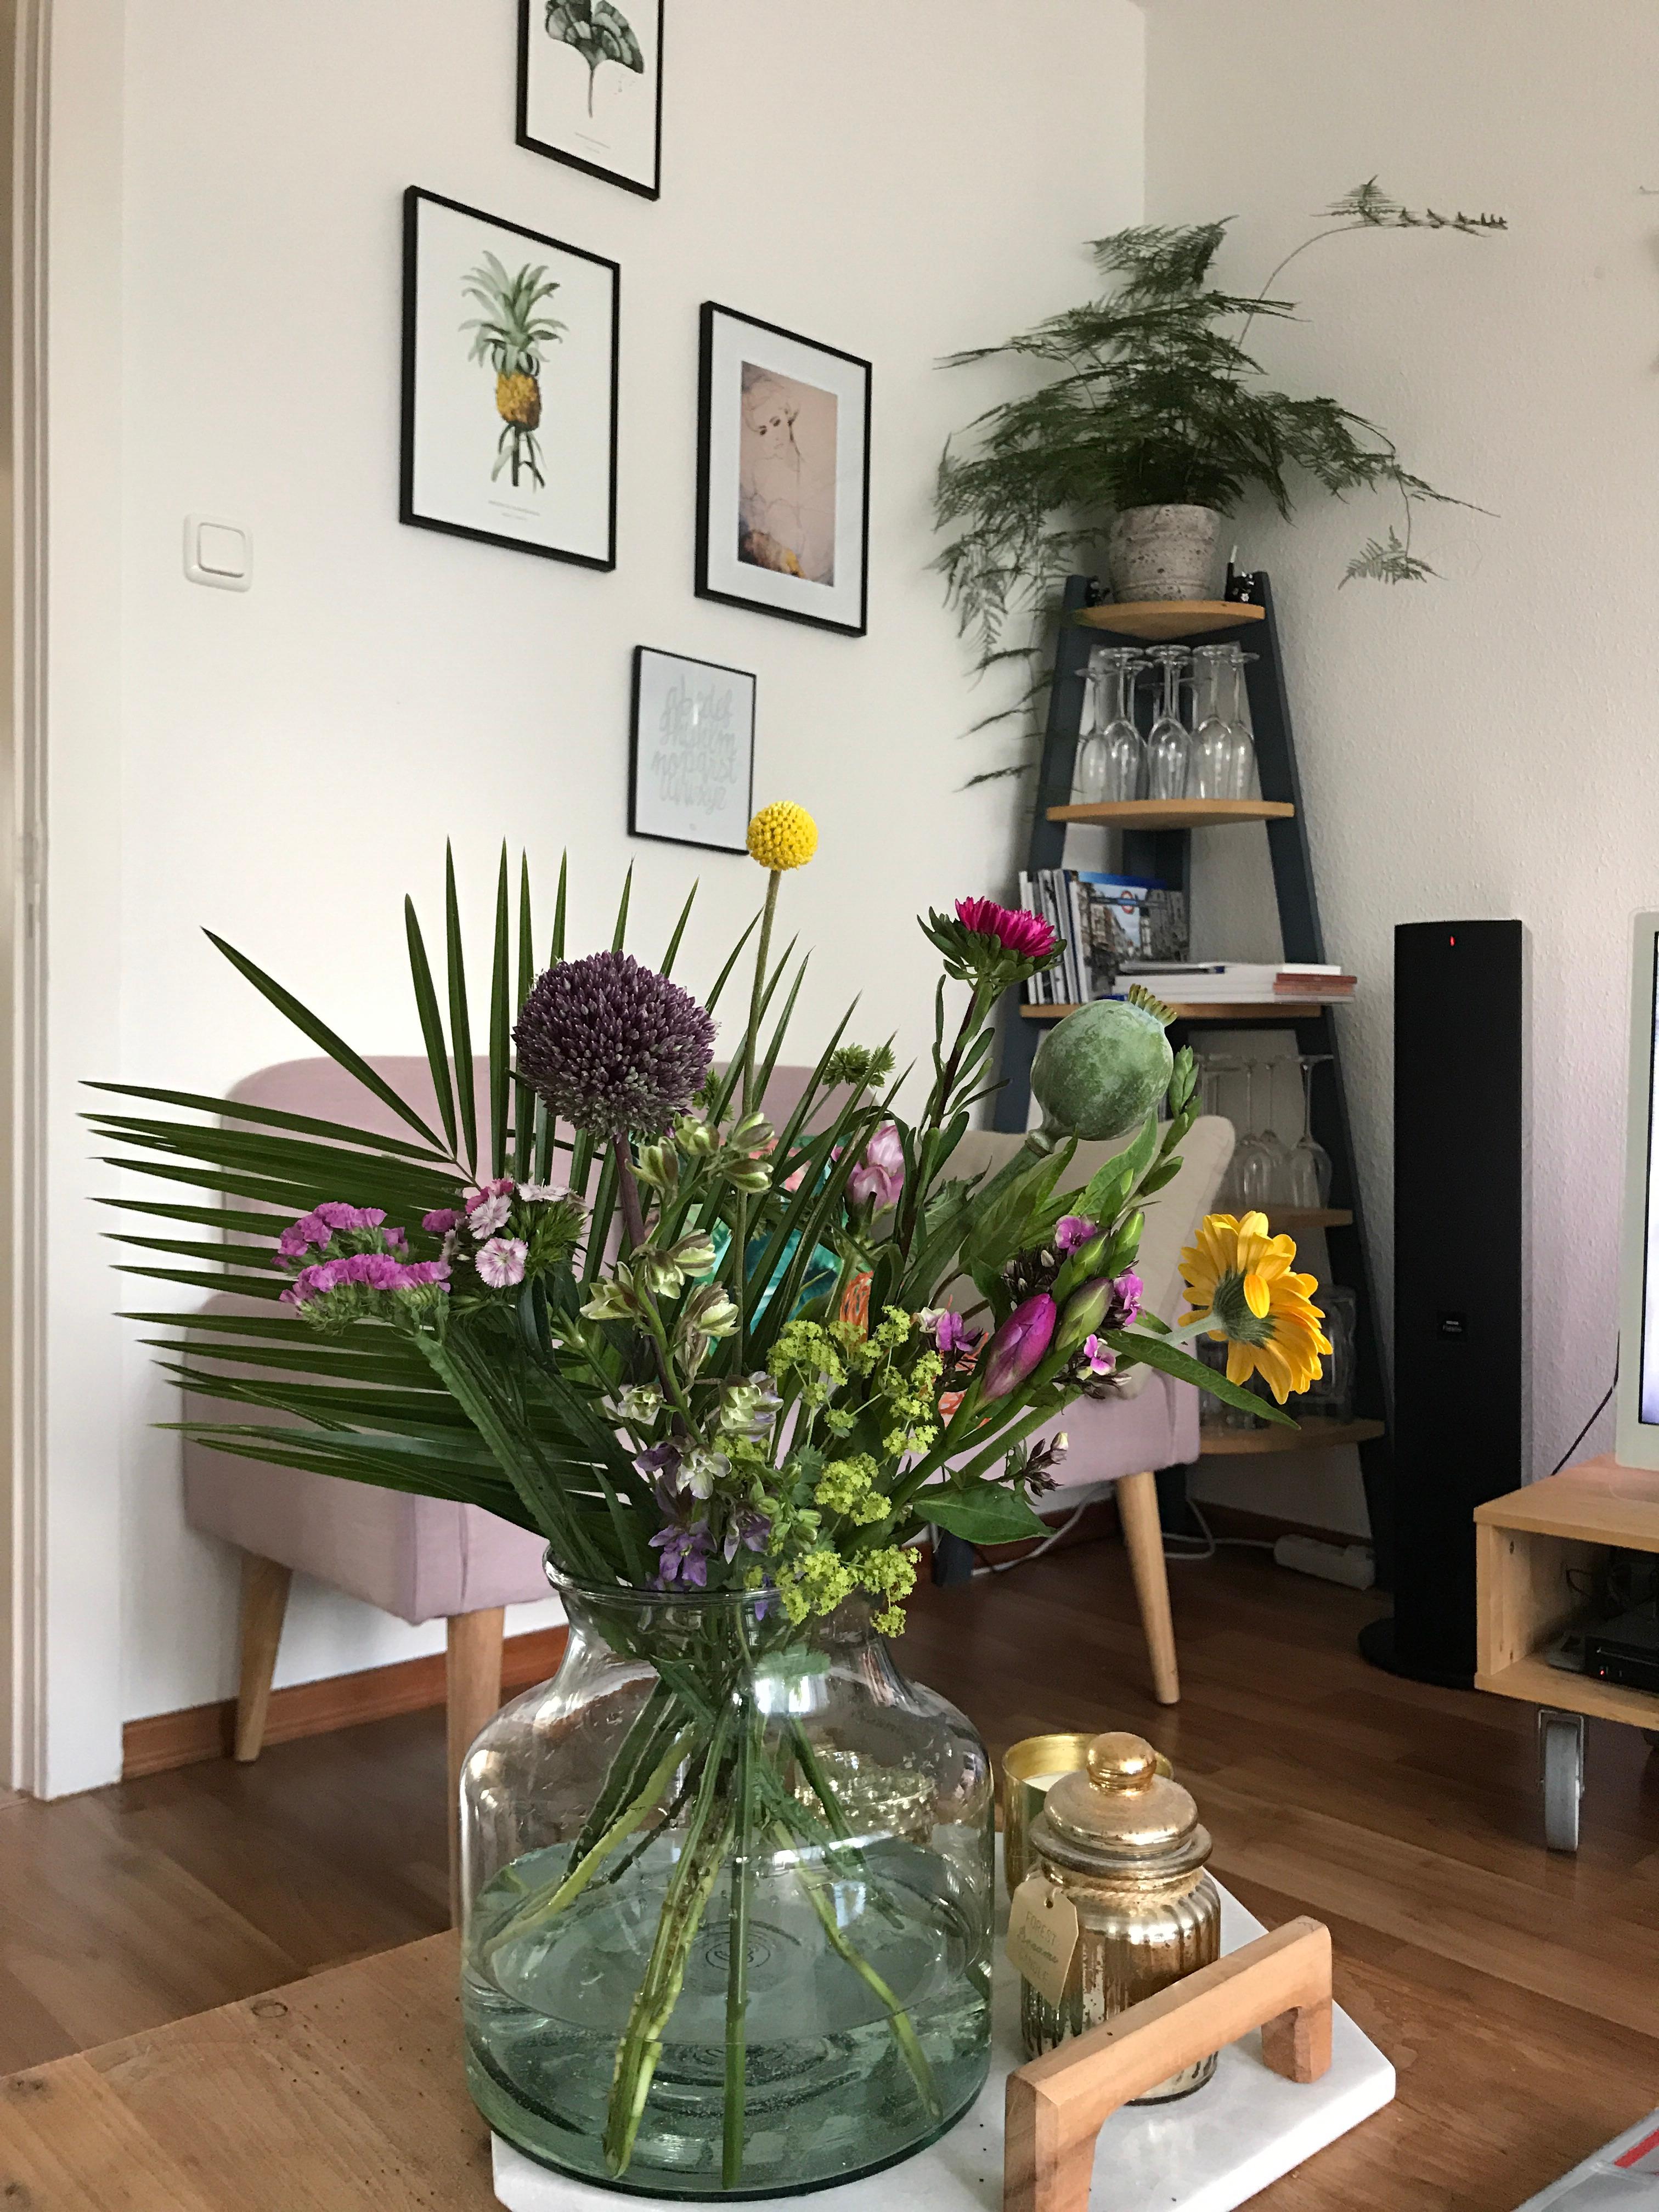 Juhu, der neue Bloomon Blumenstrauß S kam eben an. Er hat gleich seine neue Vase bezogen. 
#couchliebt #bloomonstrauß